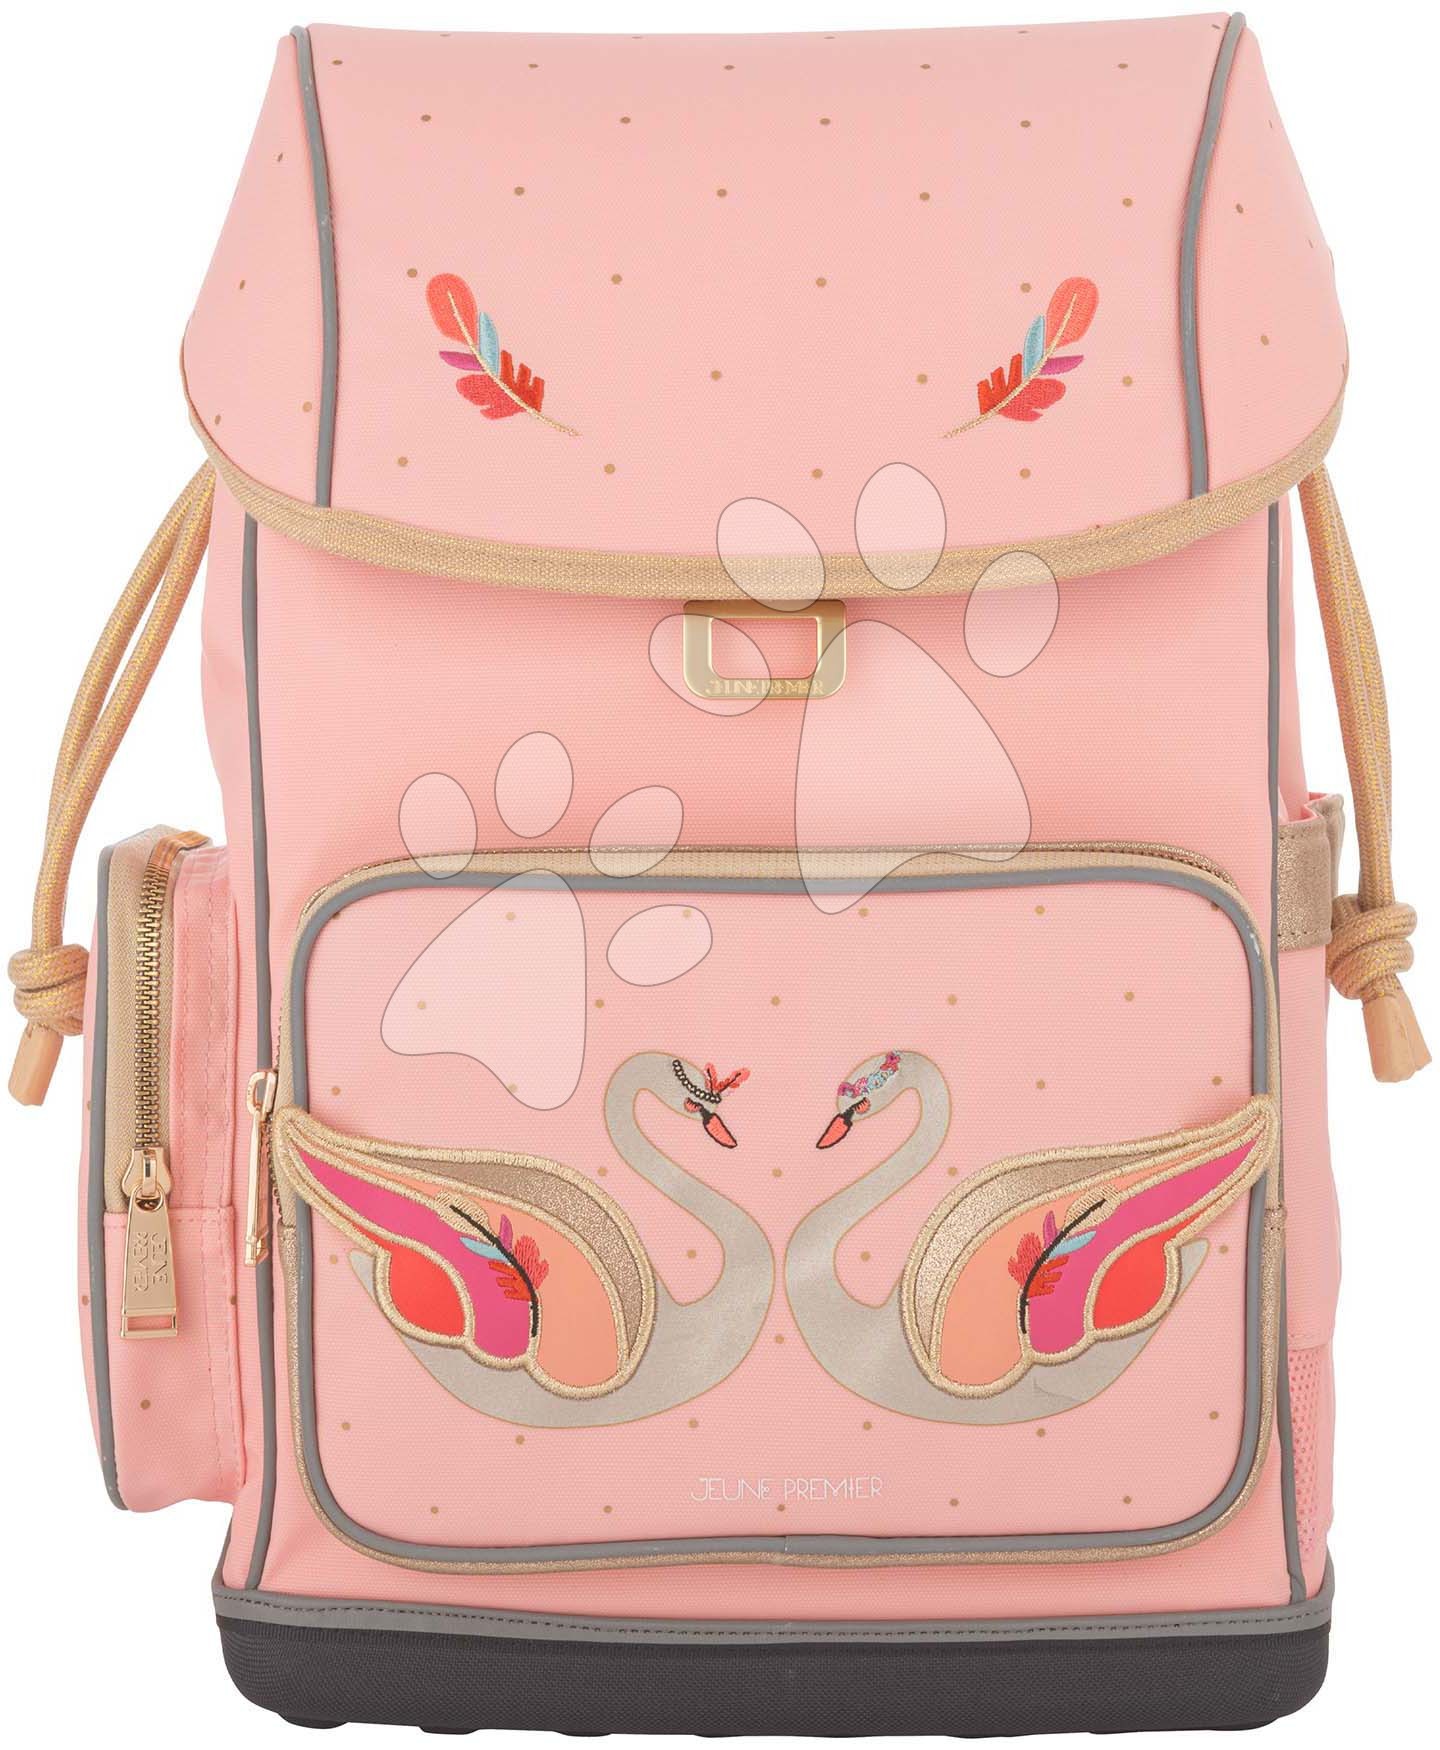 Školské tašky a batohy - Školský batoh veľký Ergomaxx Pearly Swans Jeune Premier ergonomický luxusné prevedenie 39*26 cm